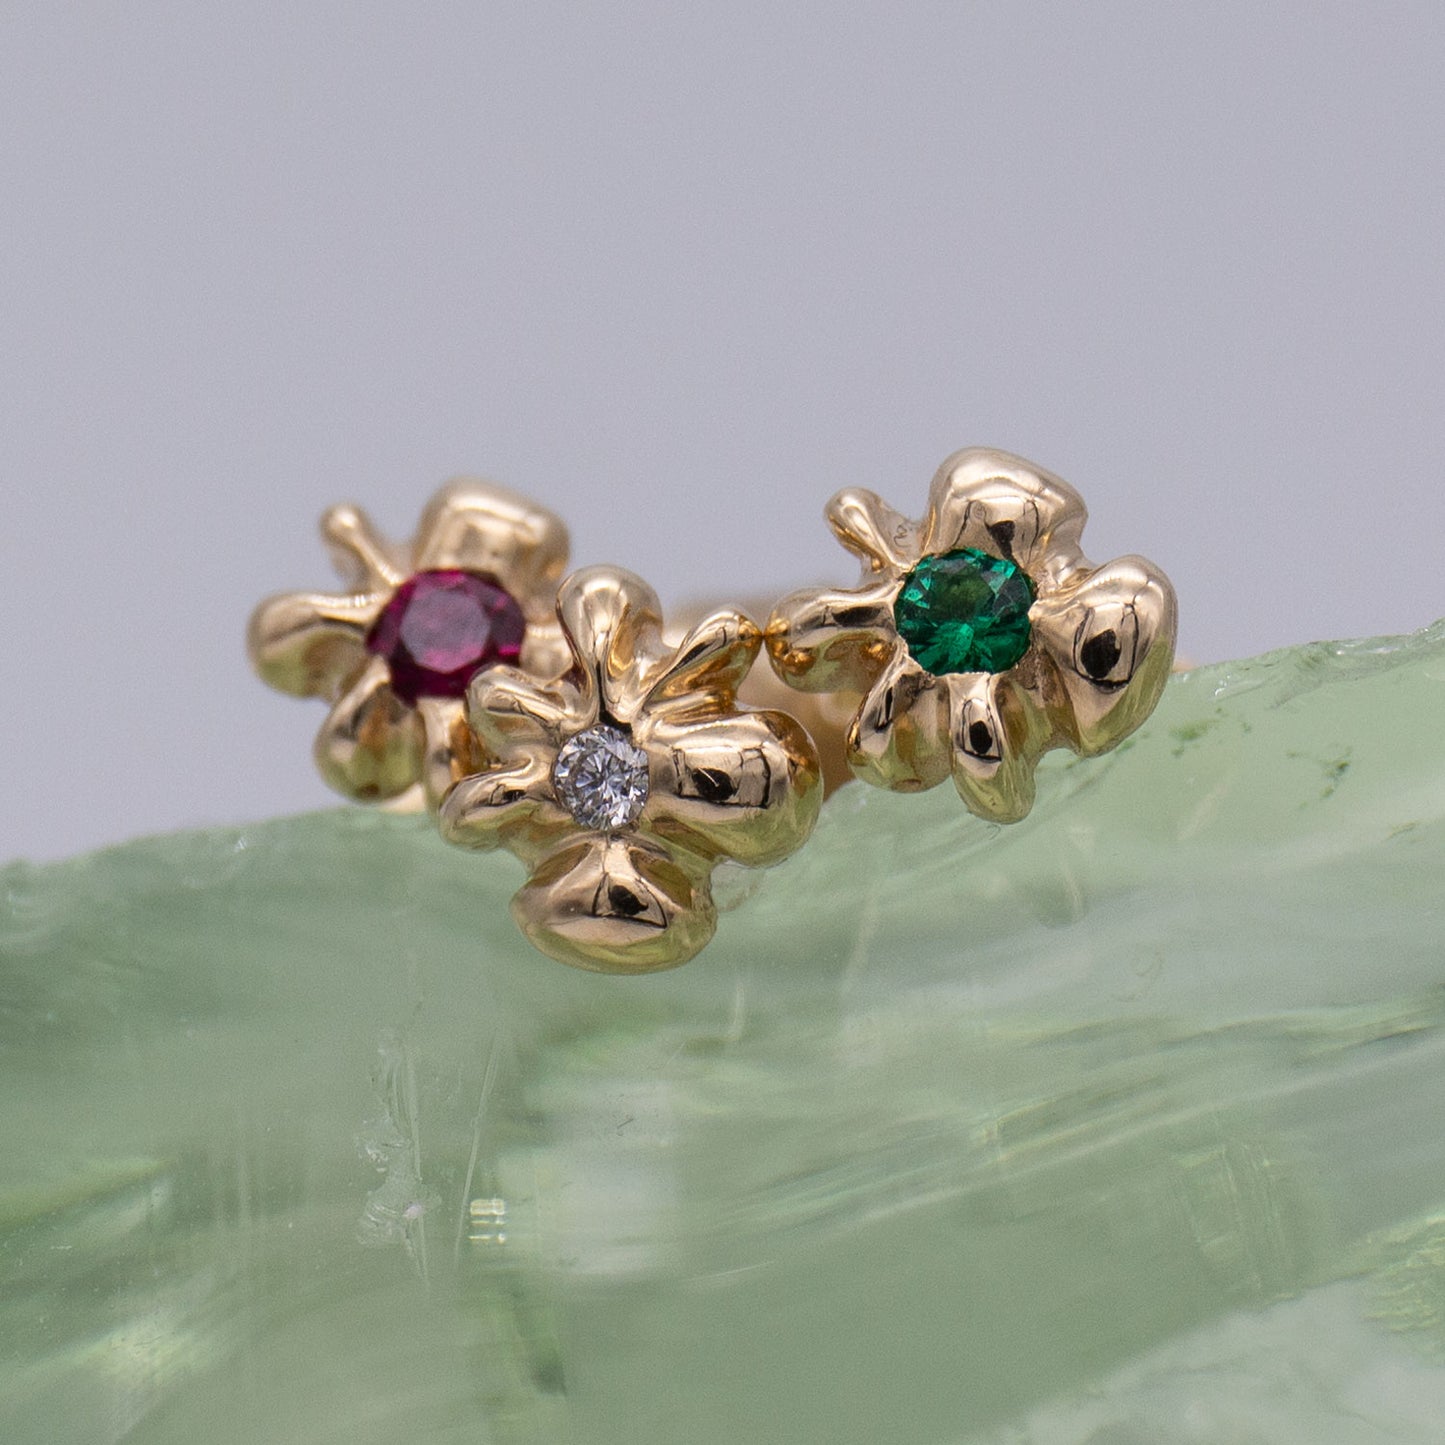 Detalje af tre ørestikker i guld formet som en blomst med henholdsvis en rubin, en diamant og en smaragd i midten siddende på en klump glas. Design af Michell Liljefelt